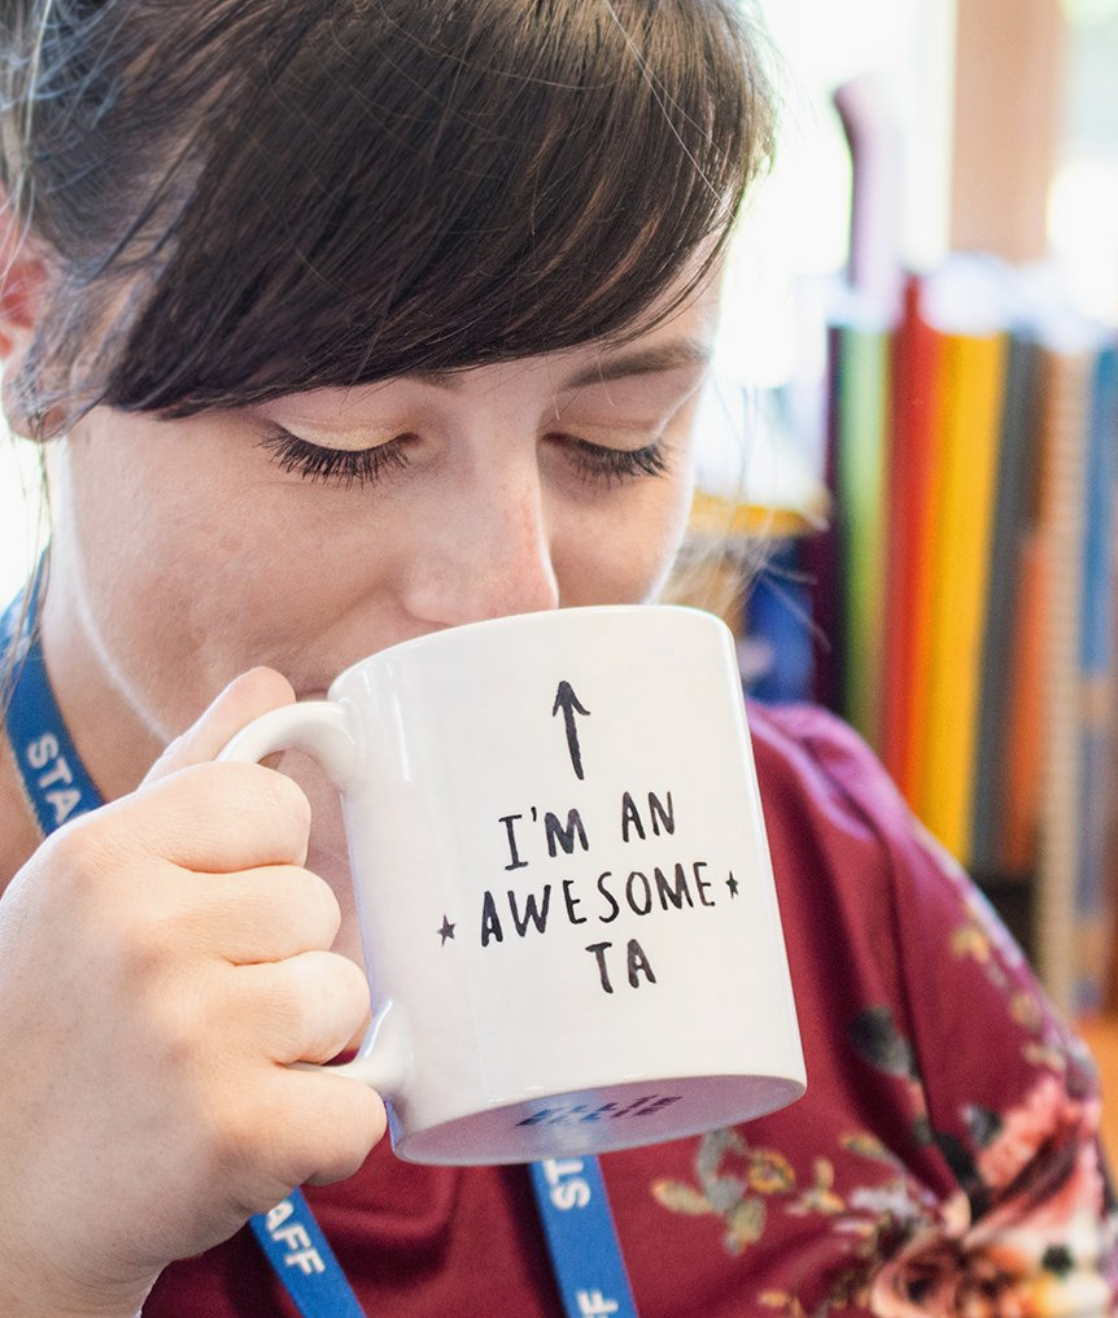 "I Am An Awesome Ta" Teaching Assistant Mug